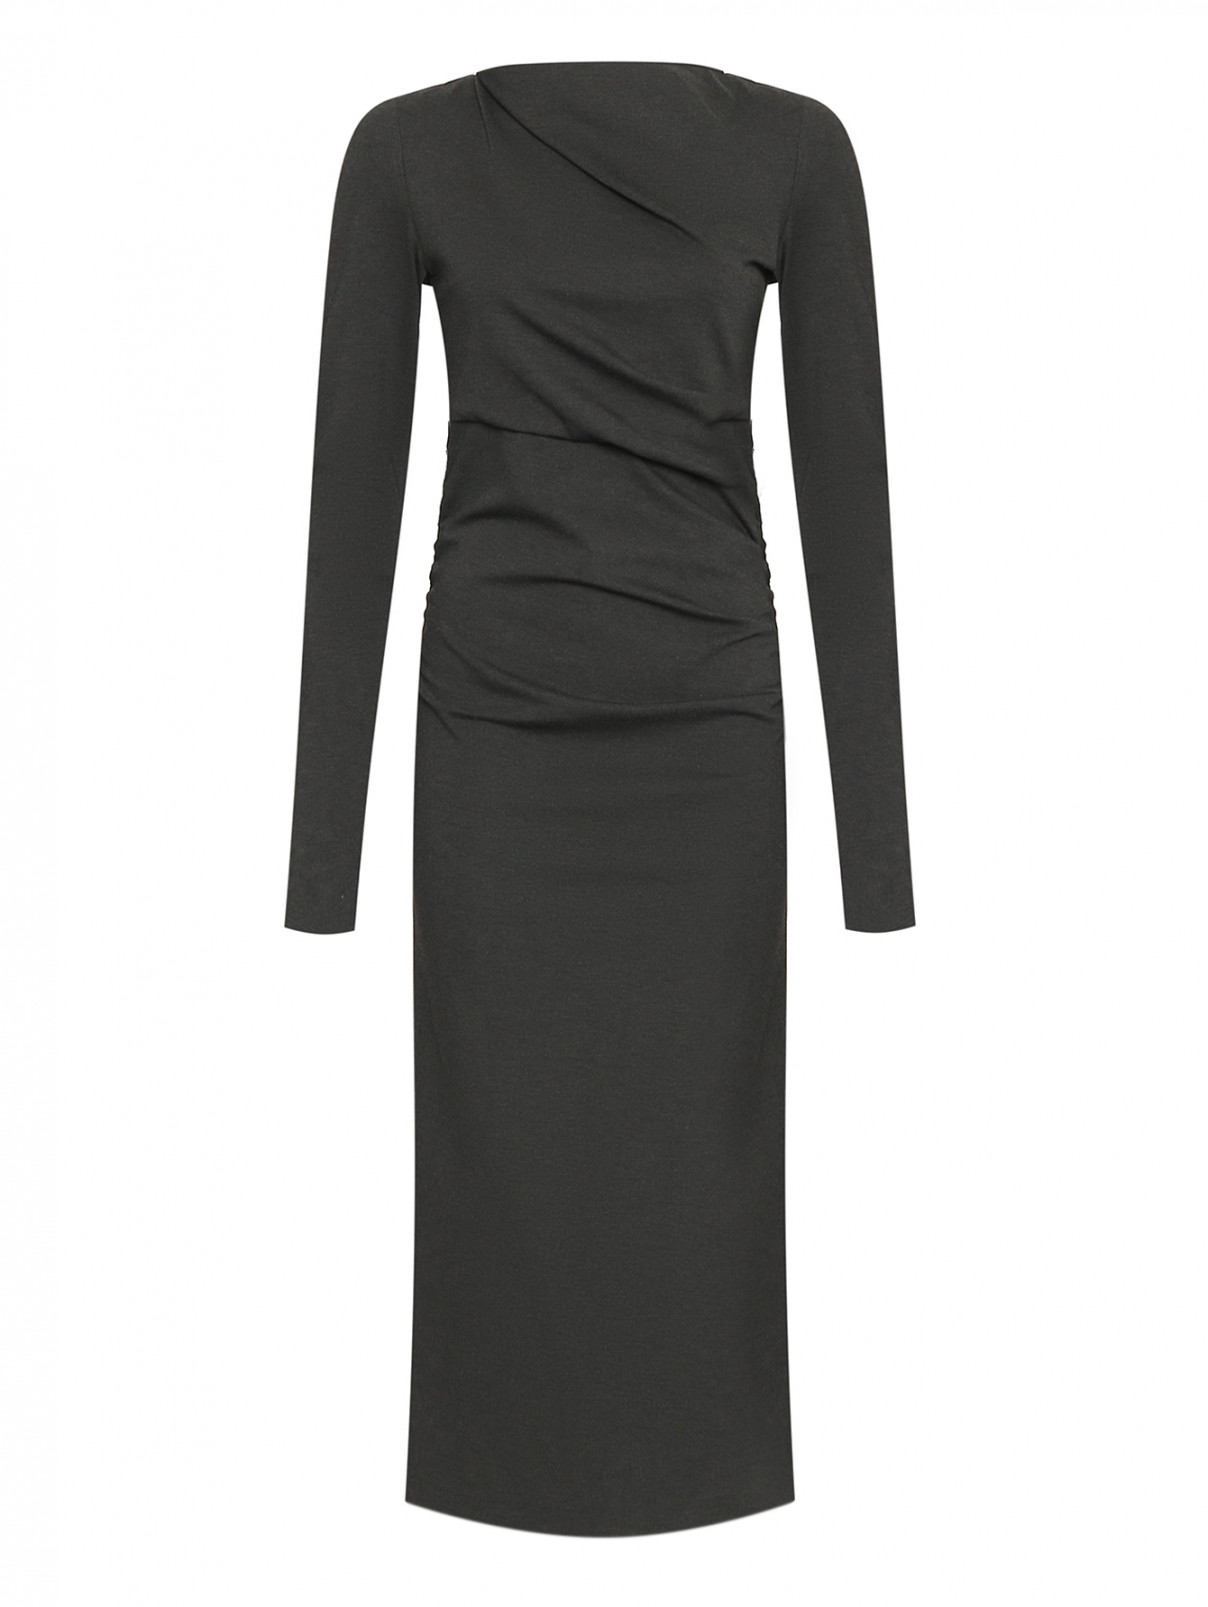 Платье трикотажное с декоративными элементами Dorothee Schumacher  –  Общий вид  – Цвет:  Серый